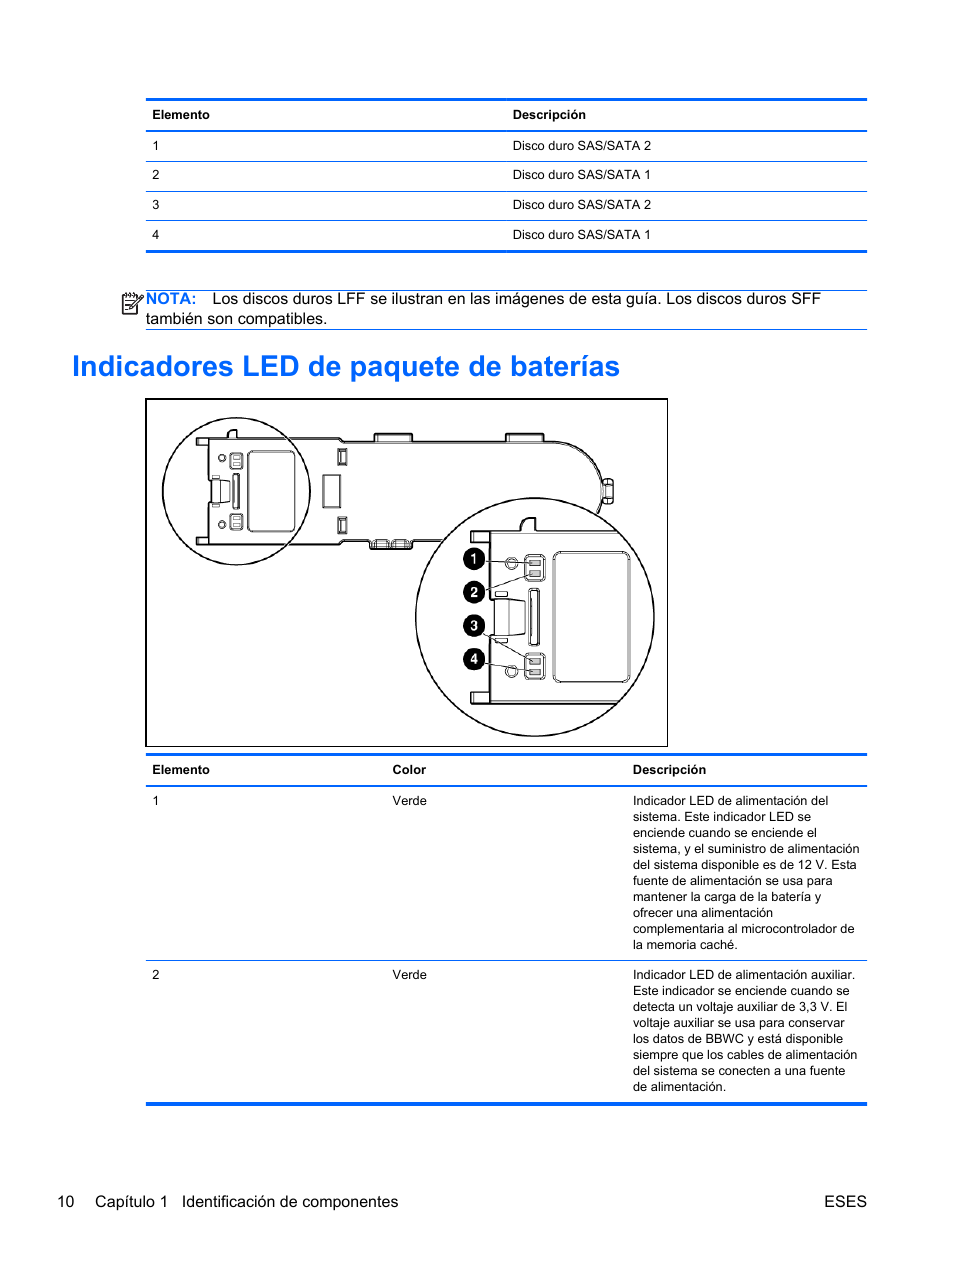 Indicadores led de paquete de baterías | HP Servidor HP ProLiant SL390s G7 Manual del usuario | Página 16 / 87